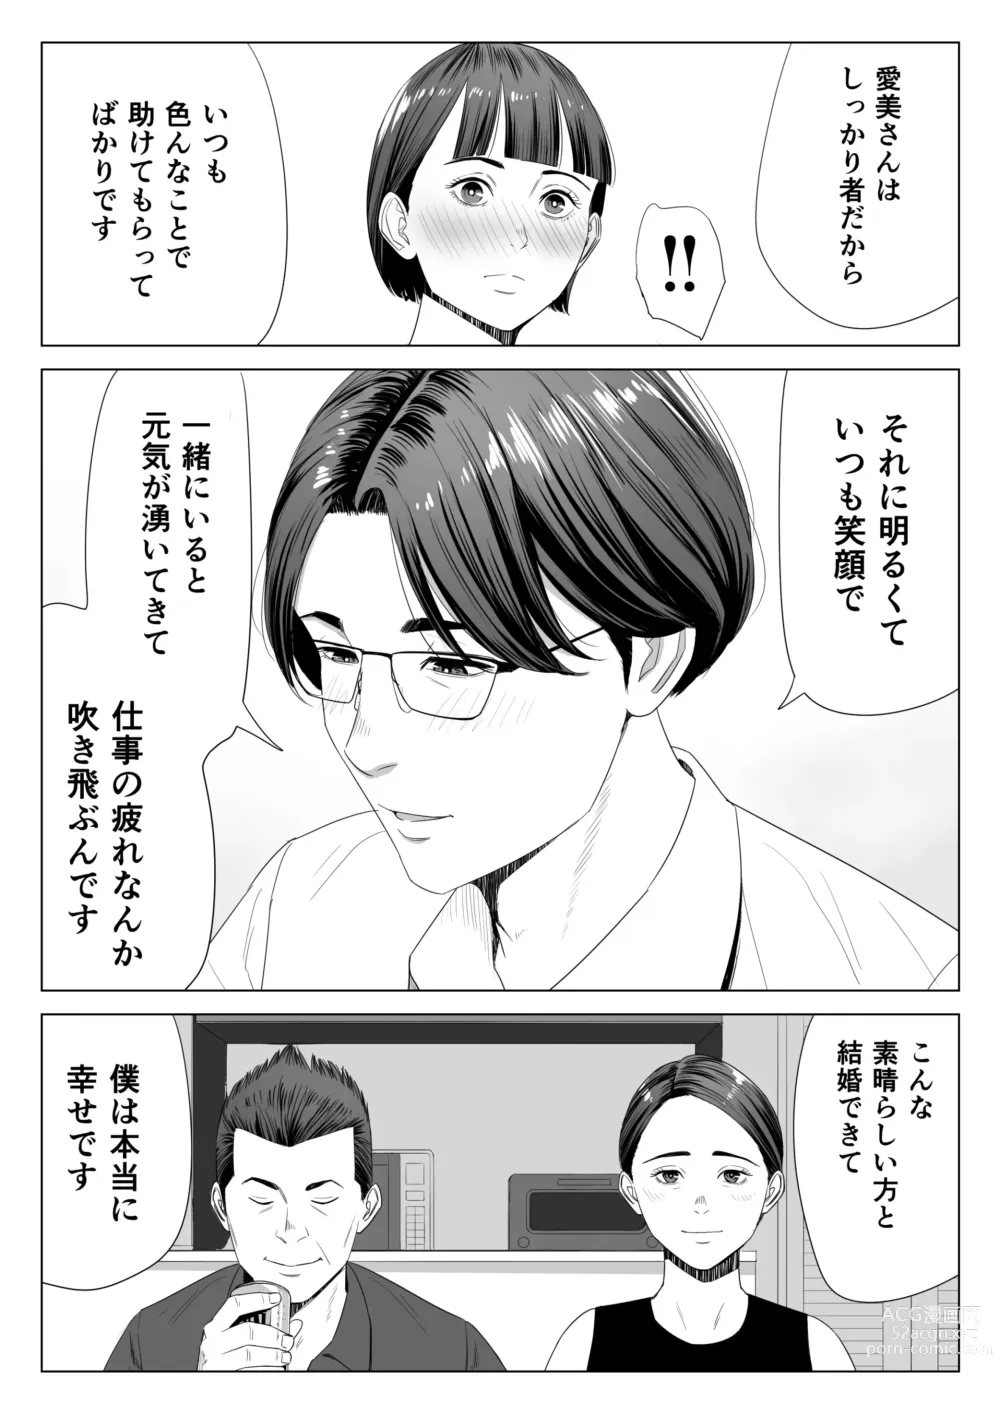 Page 6 of doujinshi Gibo no Tsukaeru Karada.